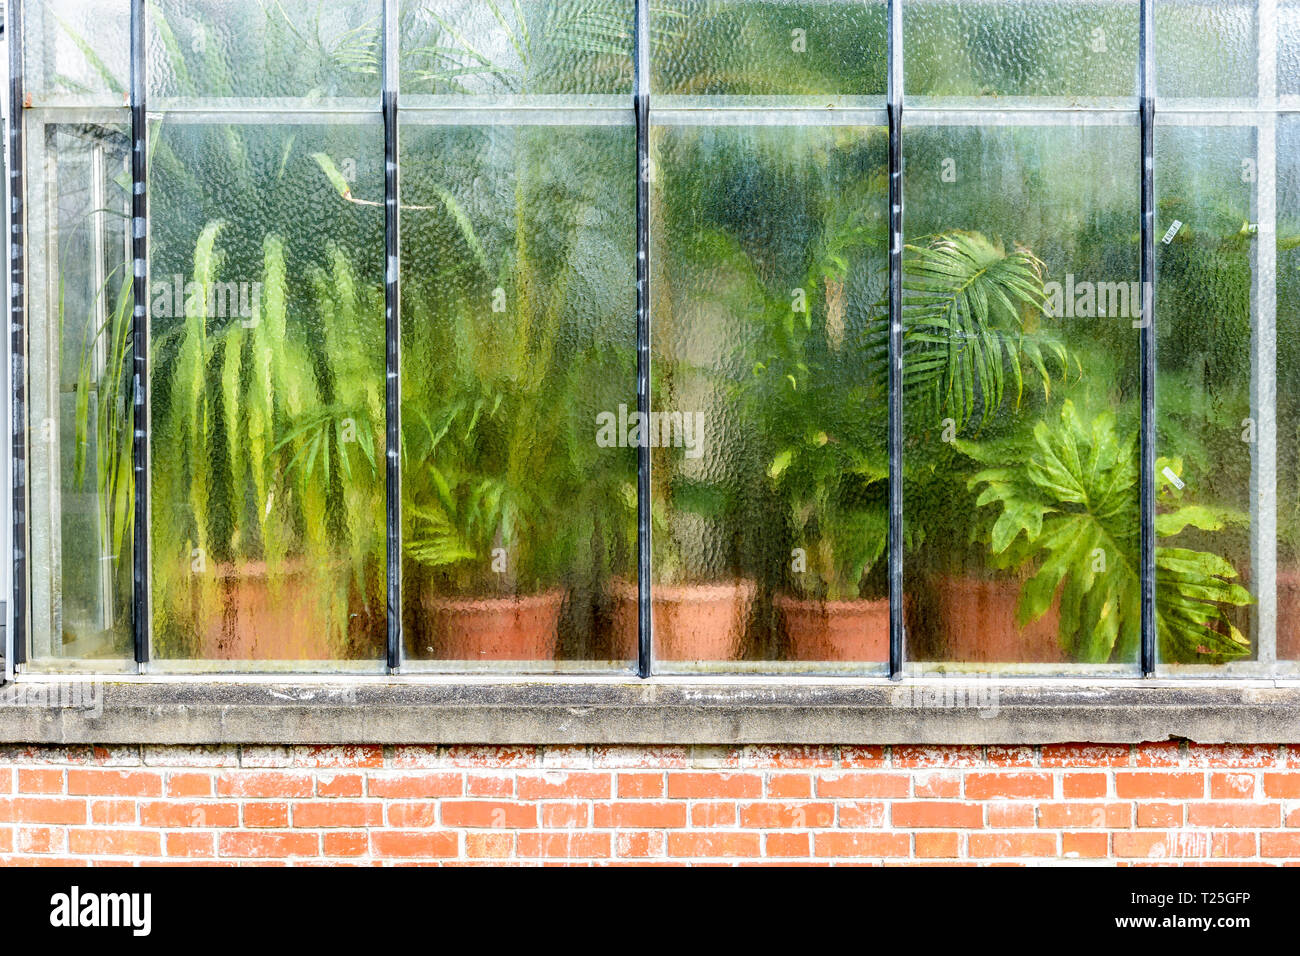 Vue de l'extérieur de différents types de plantes en pot vert derrière le mur de verre de distorsion d'une serre tropicale sur des murs en brique. Banque D'Images